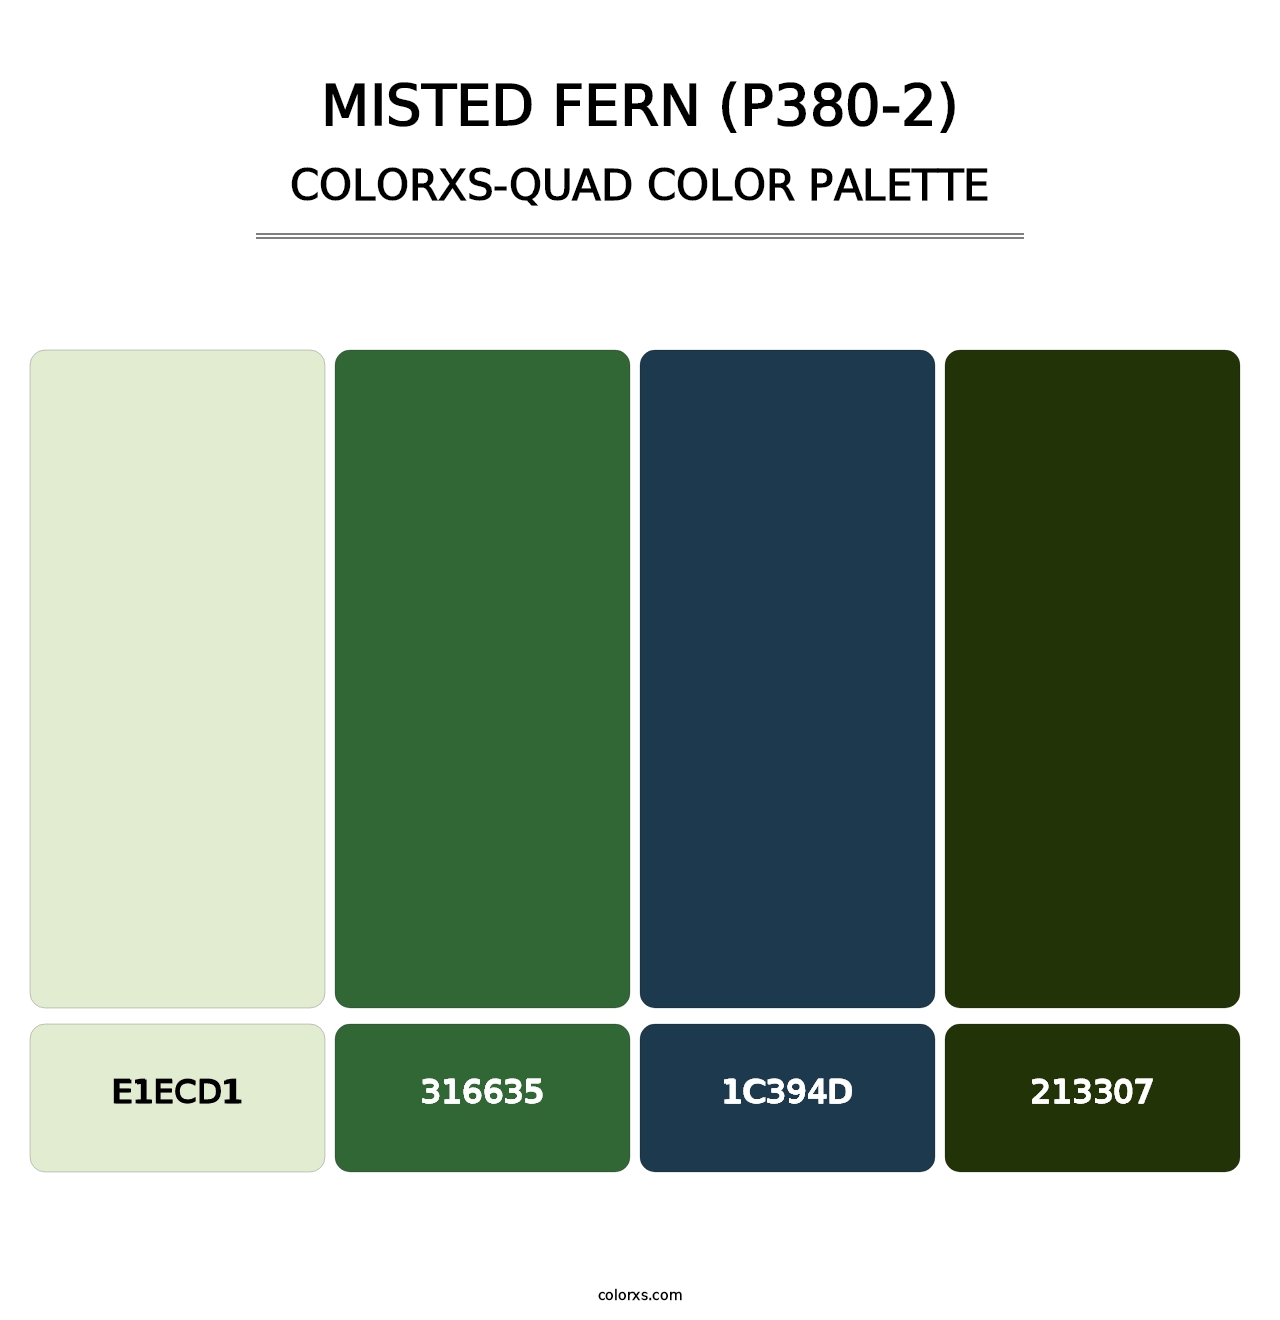 Misted Fern (P380-2) - Colorxs Quad Palette